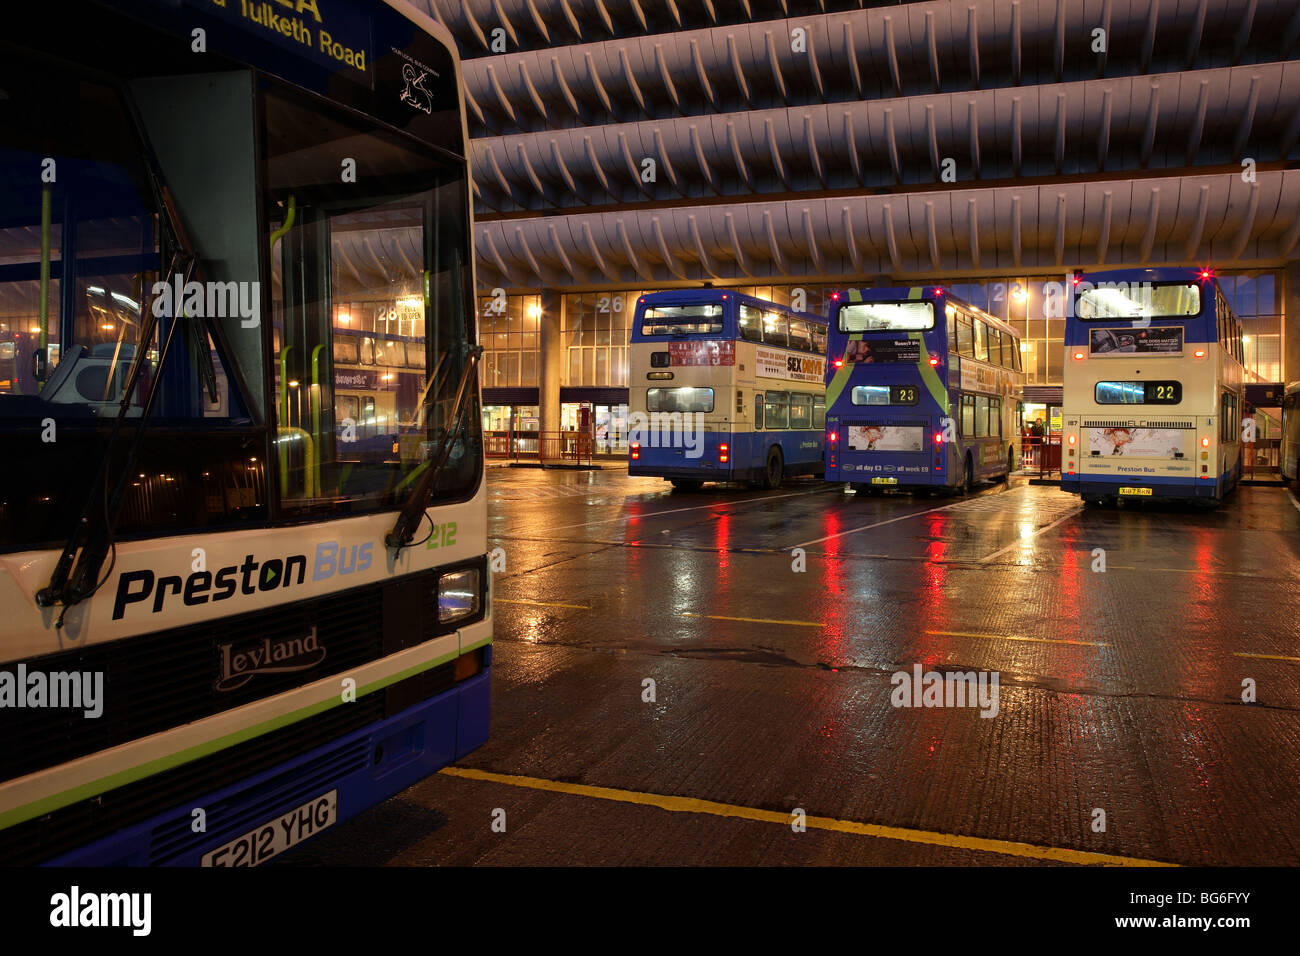 Preston buses Stock Photo